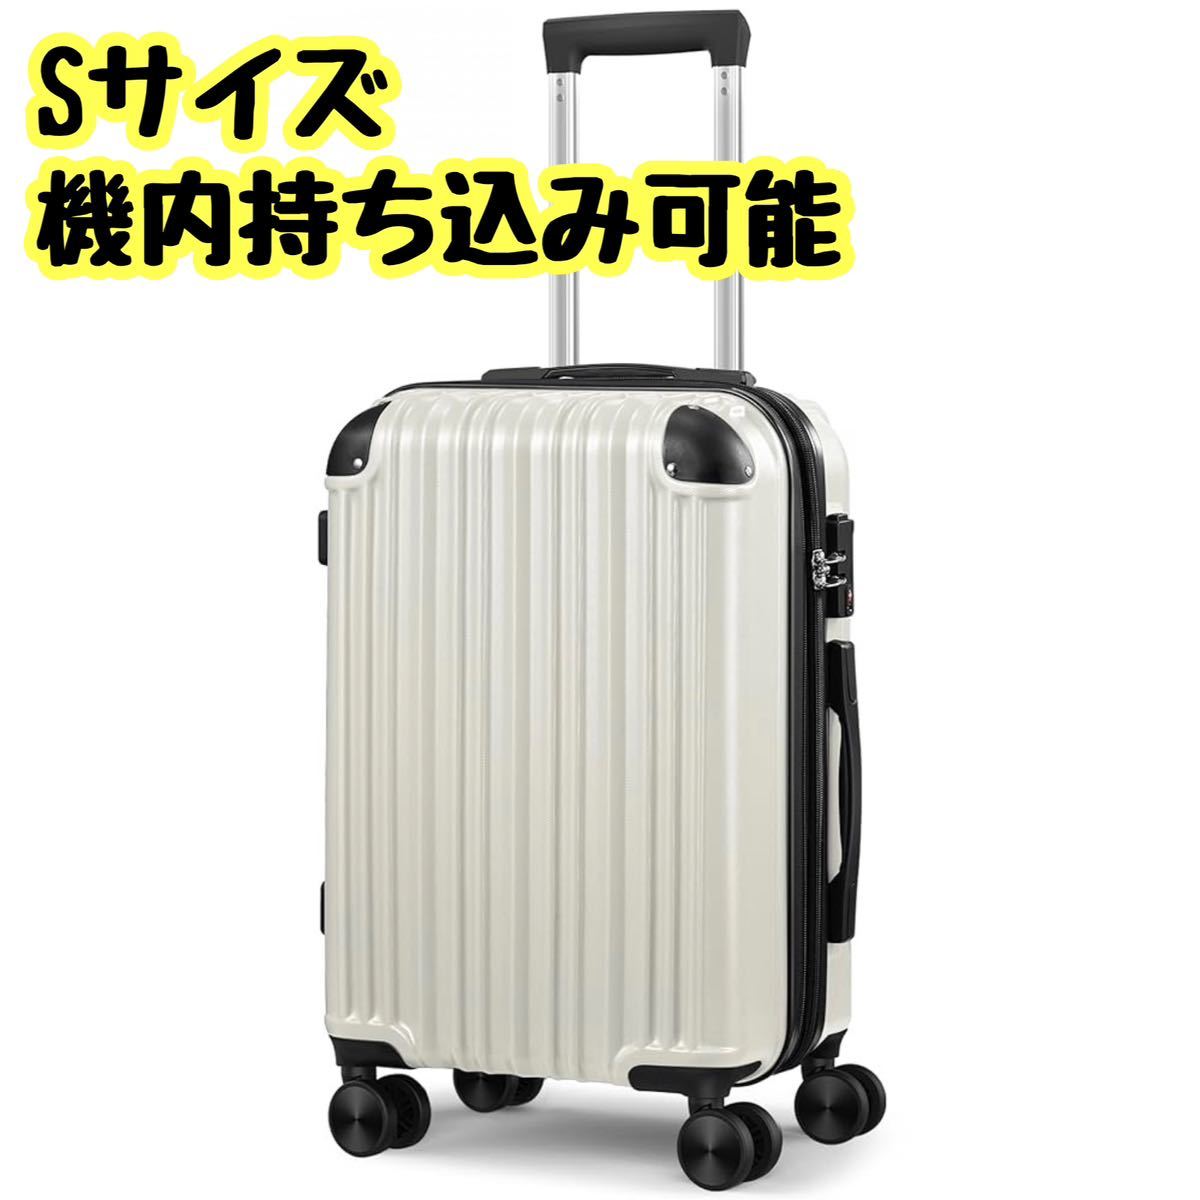 機内持ち込みOK❣️ スーツケース白⭐️トップオープン機能付き - 旅行